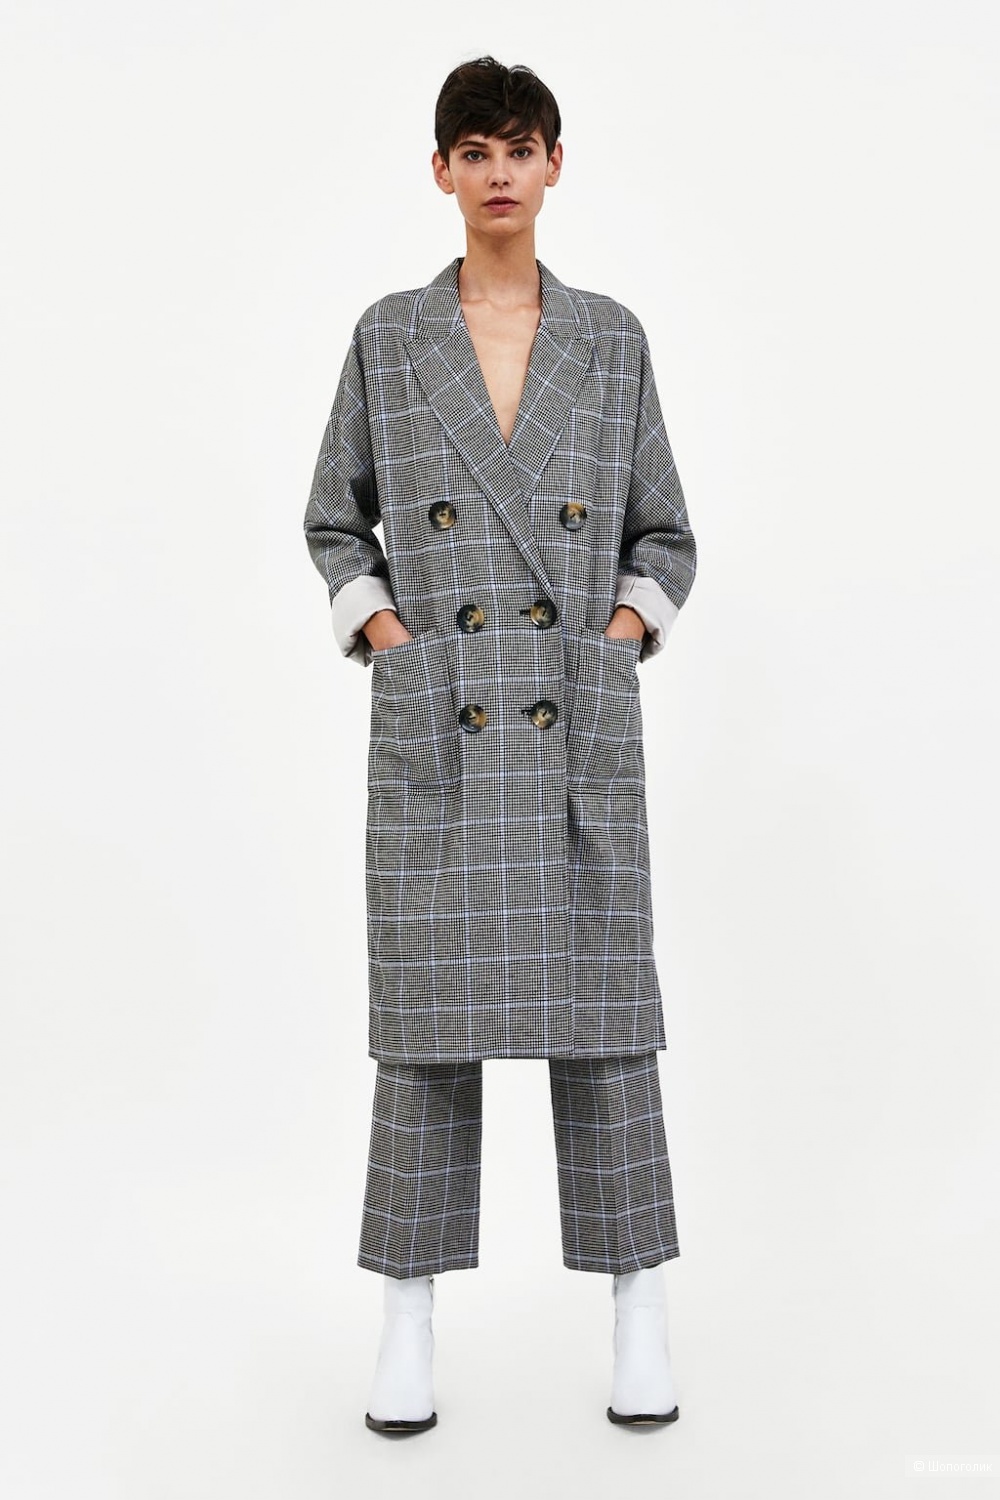 Пальто L + брюки M, Zara